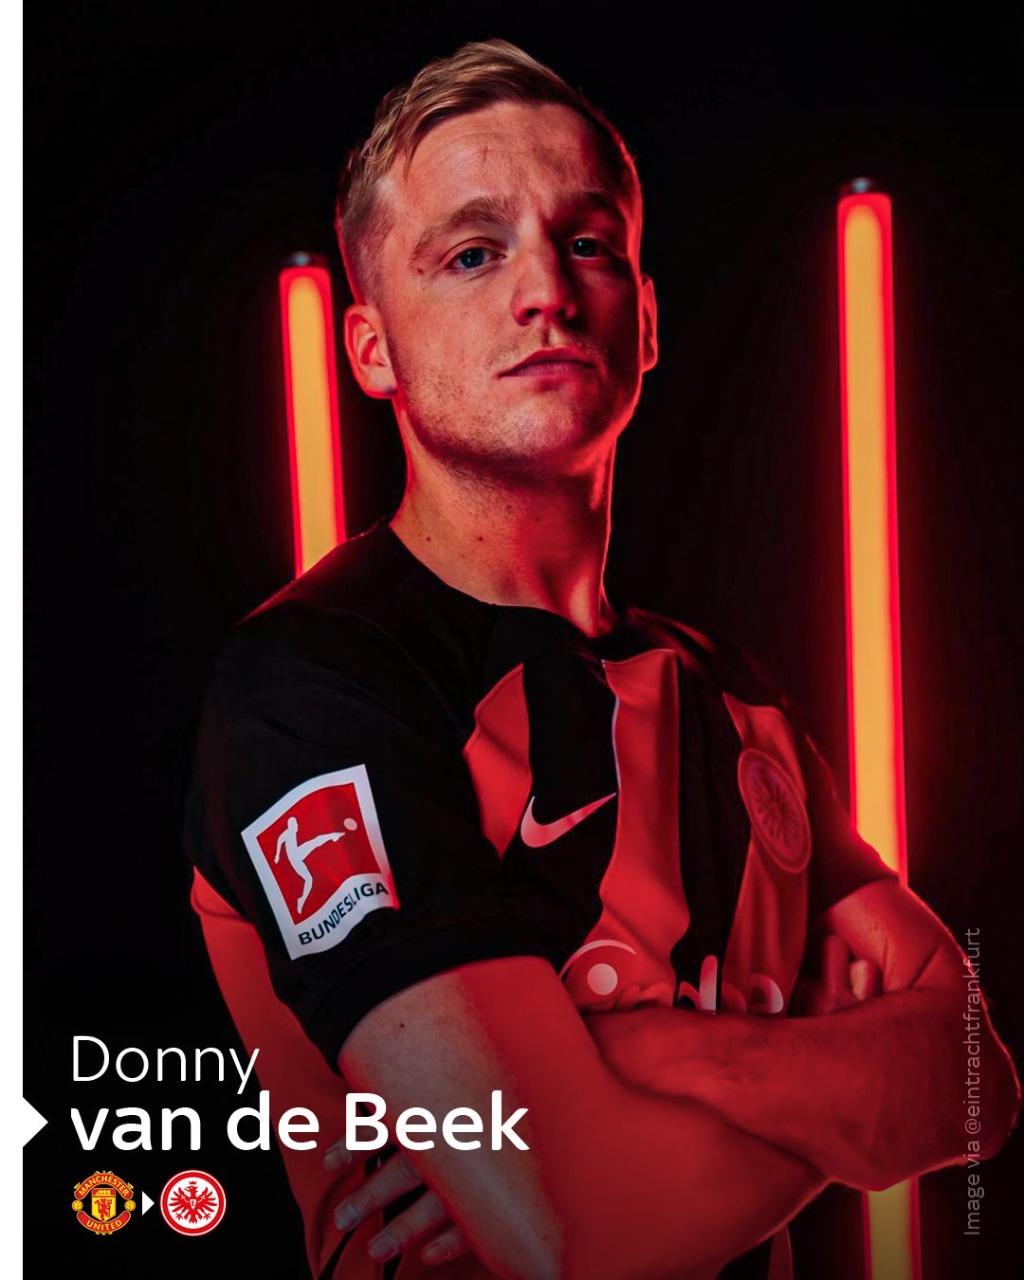 LAST GAME: Donny van de Beek was introduced by Eintracht Frankfurt in a ...